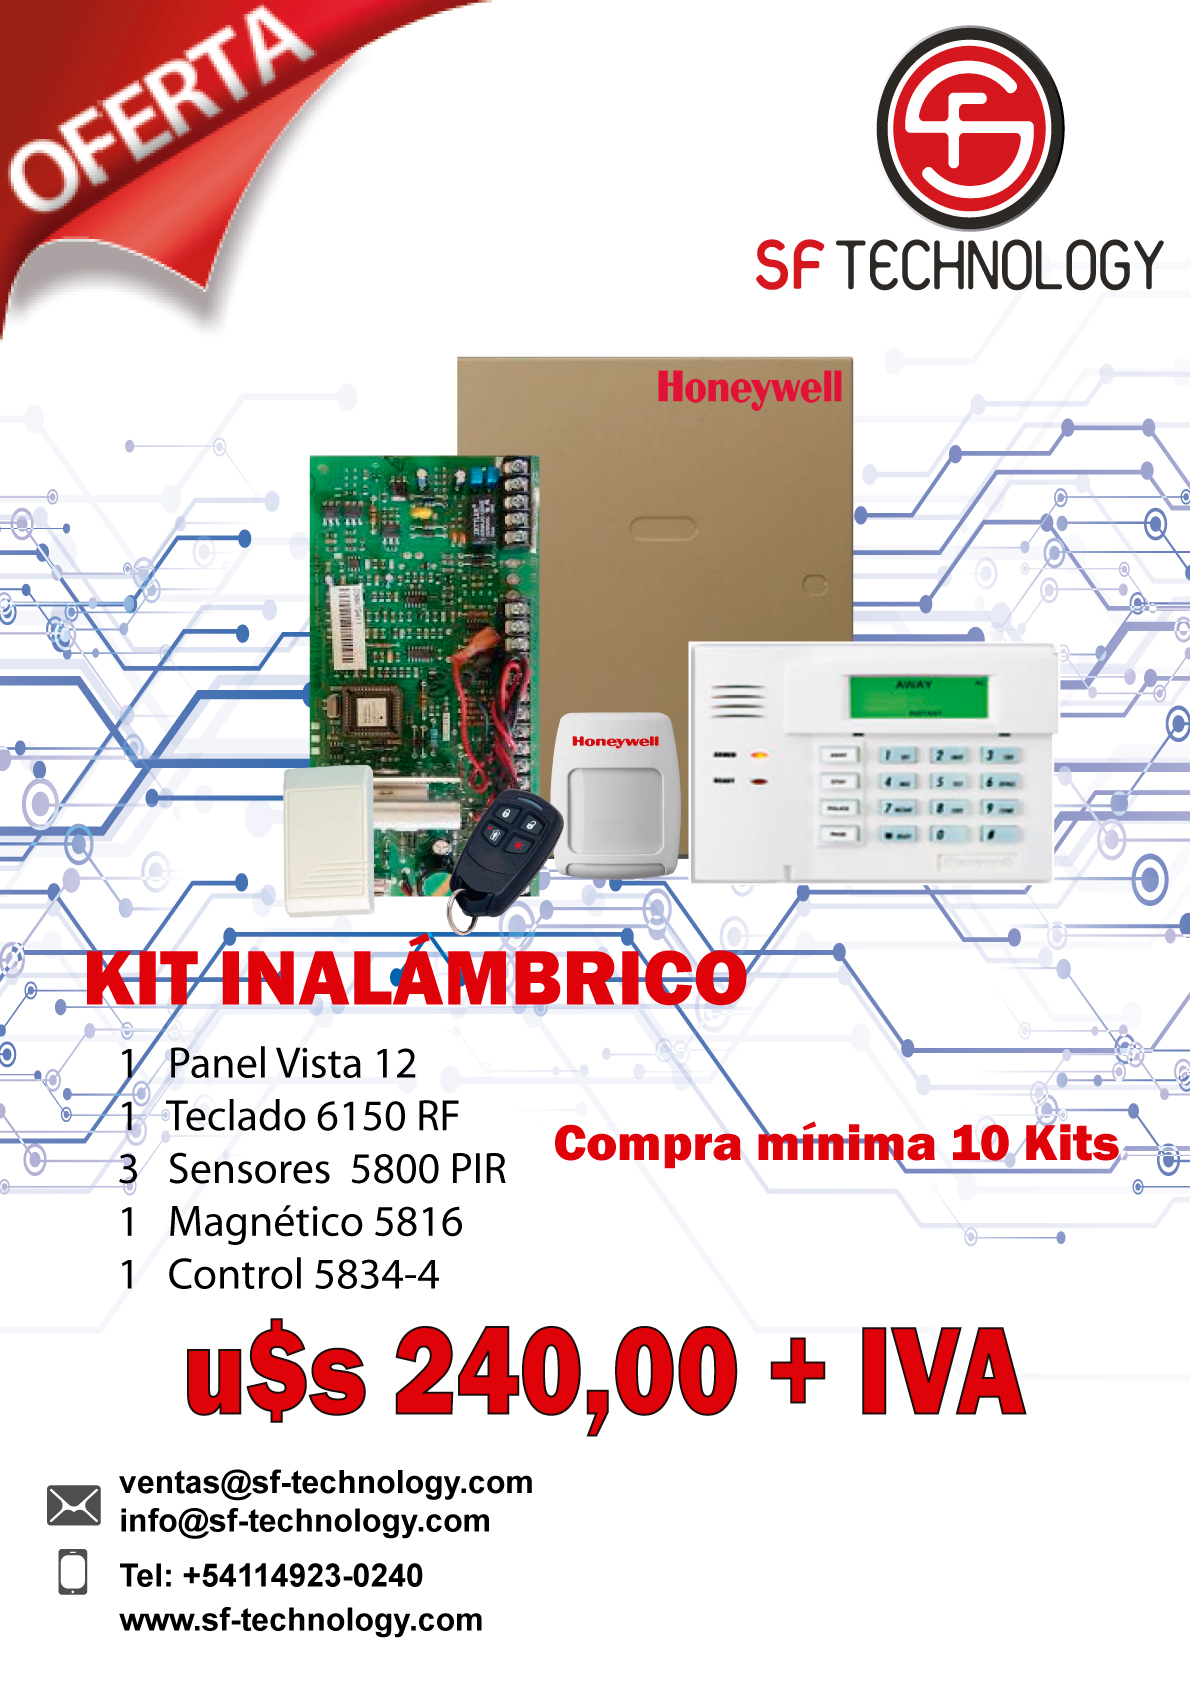 kit-inalambrico-no-2